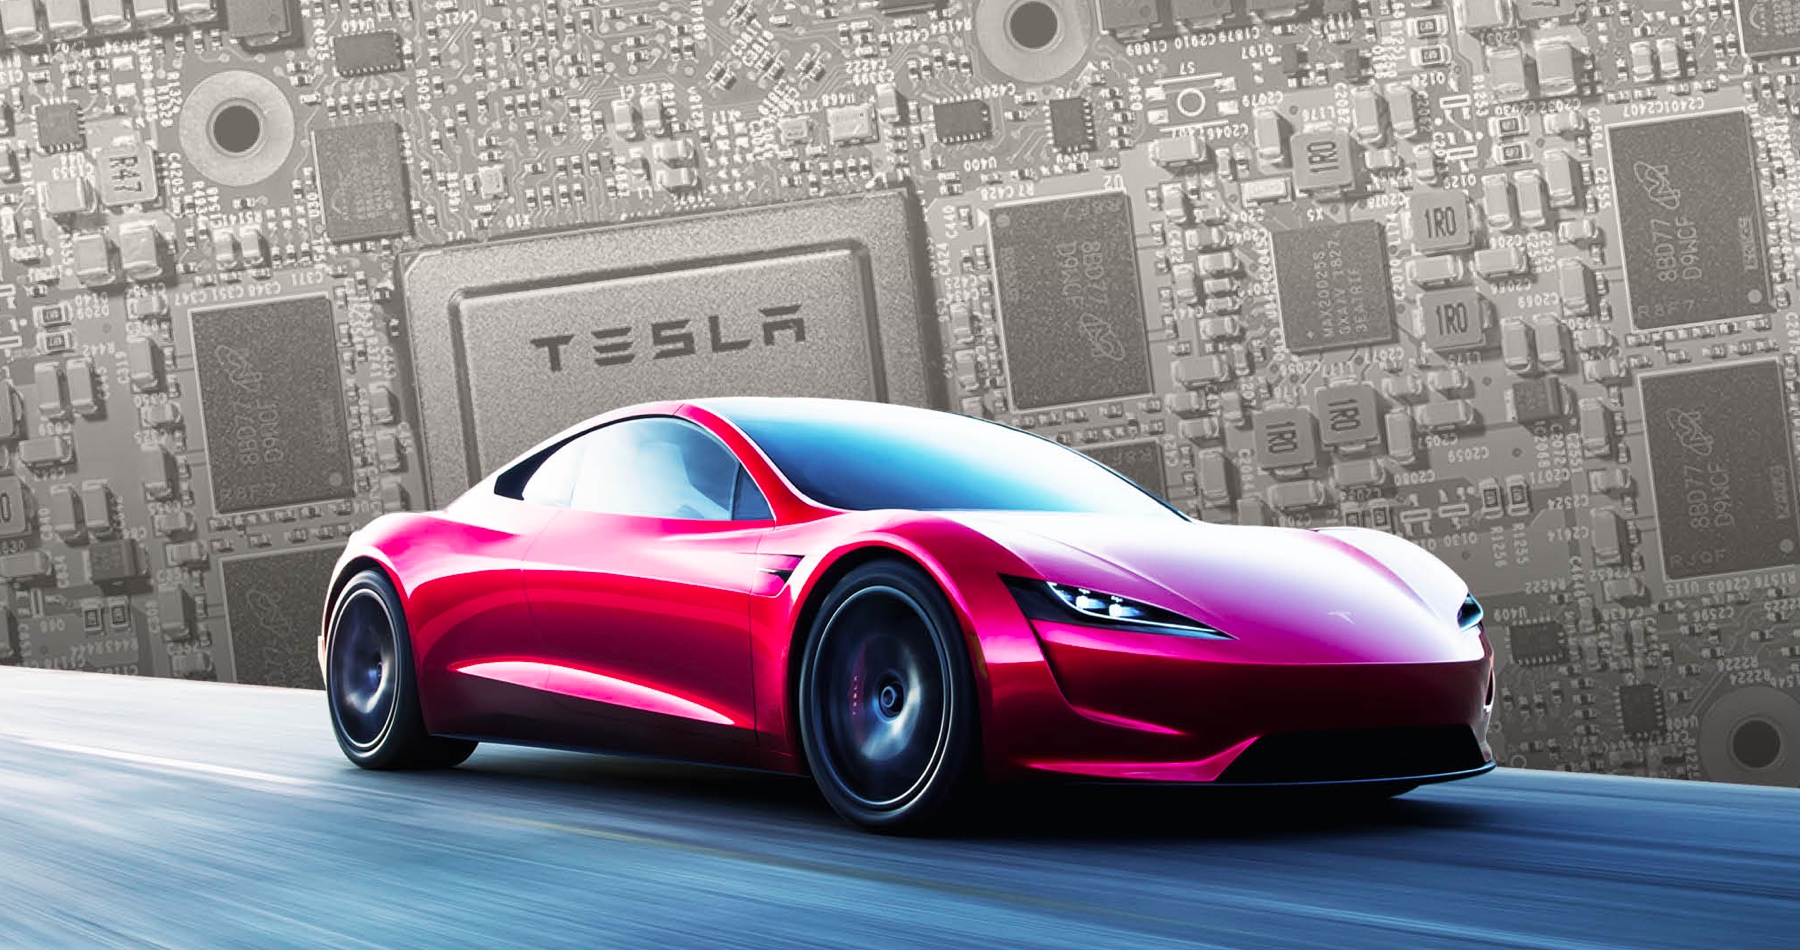 Tesla na diaľku zablokovala majiteľovi 30 % dojazdu. Teraz žiada tisíce eur na odomknutie